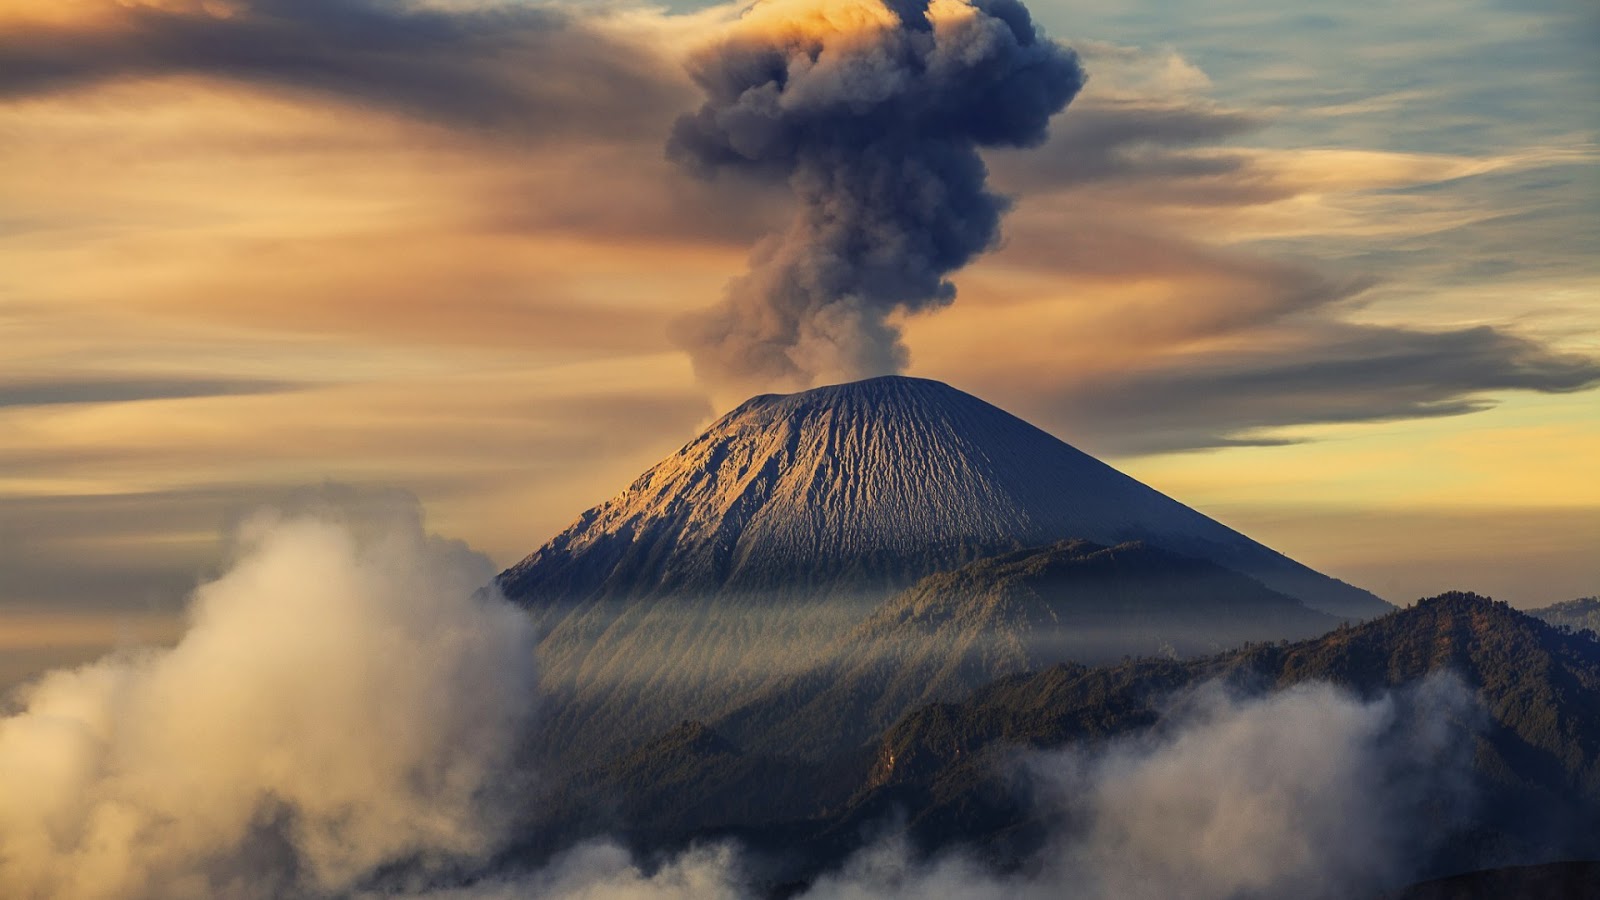 Top 53 Volcano Wallpapers 2017